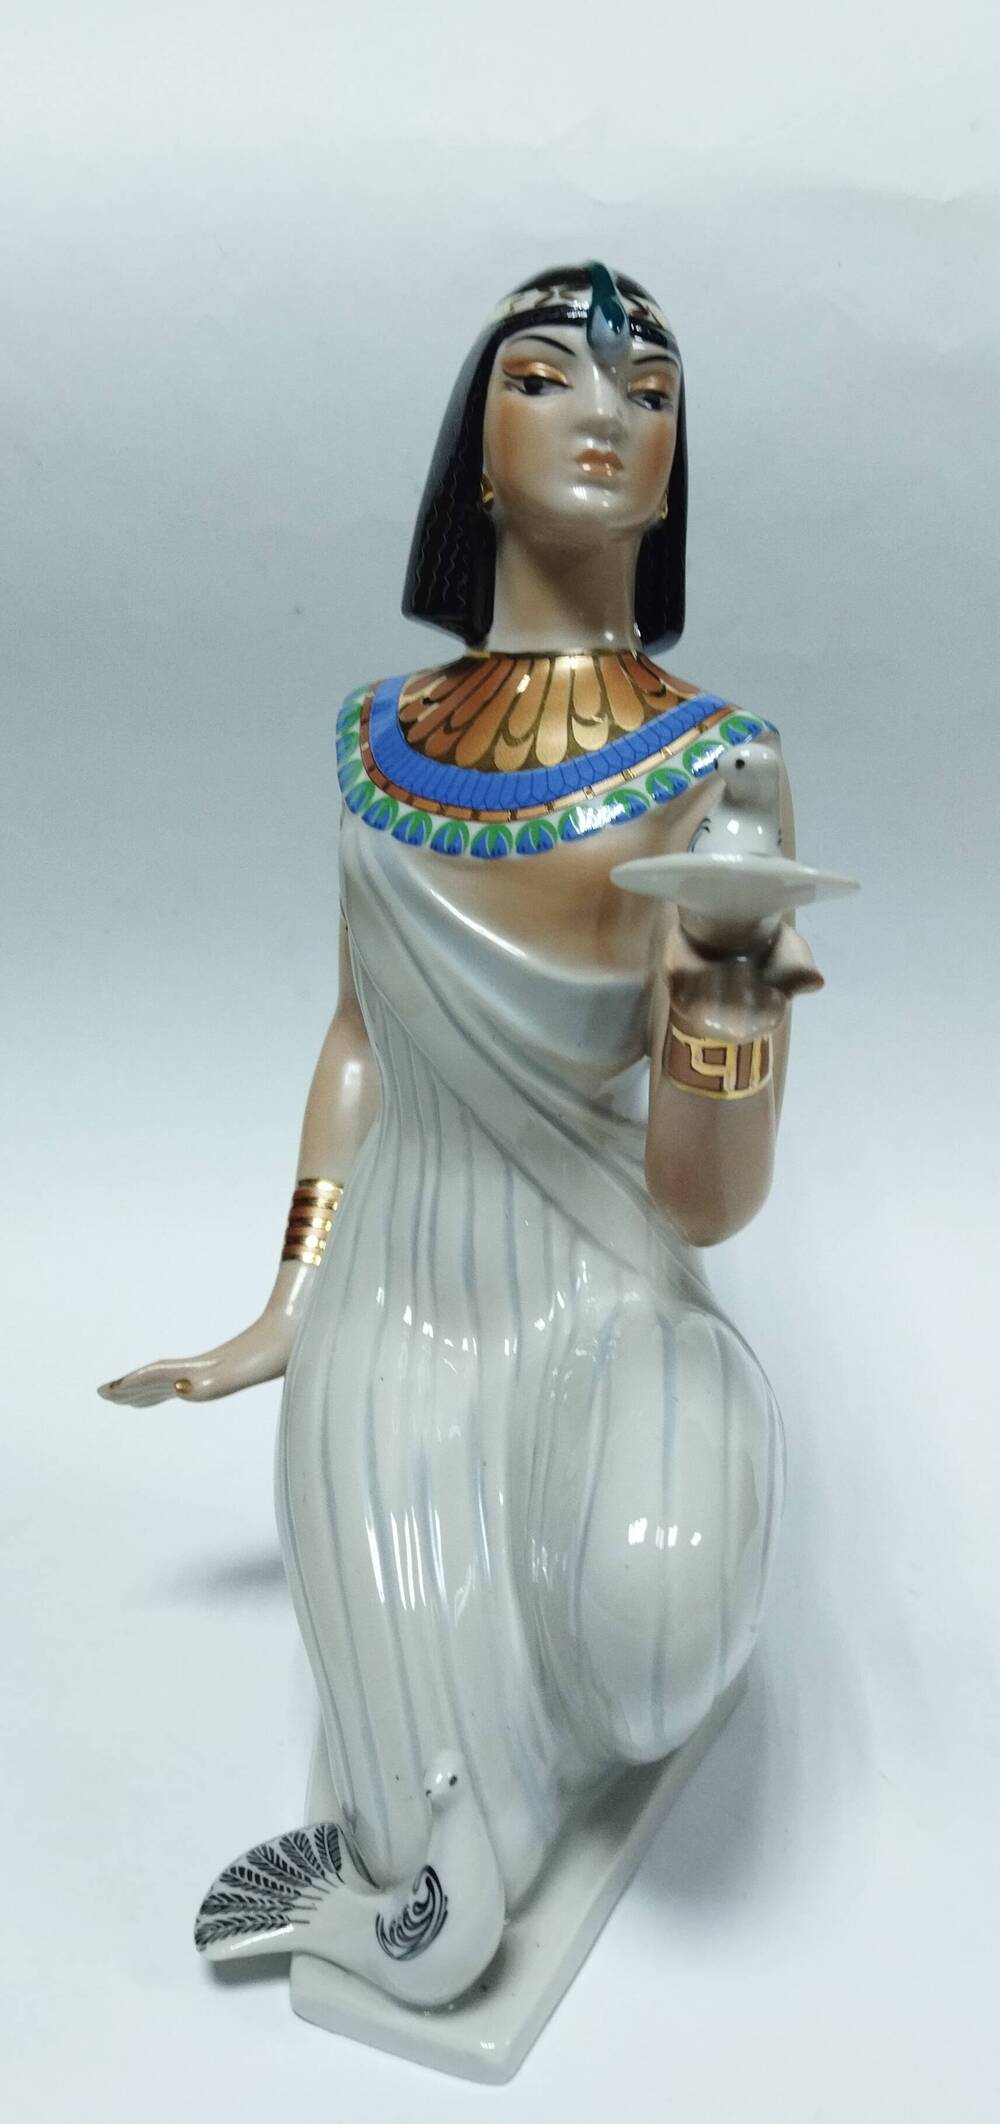 Статуэтка «Египтянка с голубями» » из коллекции Варвары Андреевны Петровой, Почетного гражданина Республики Саха (Якутия)